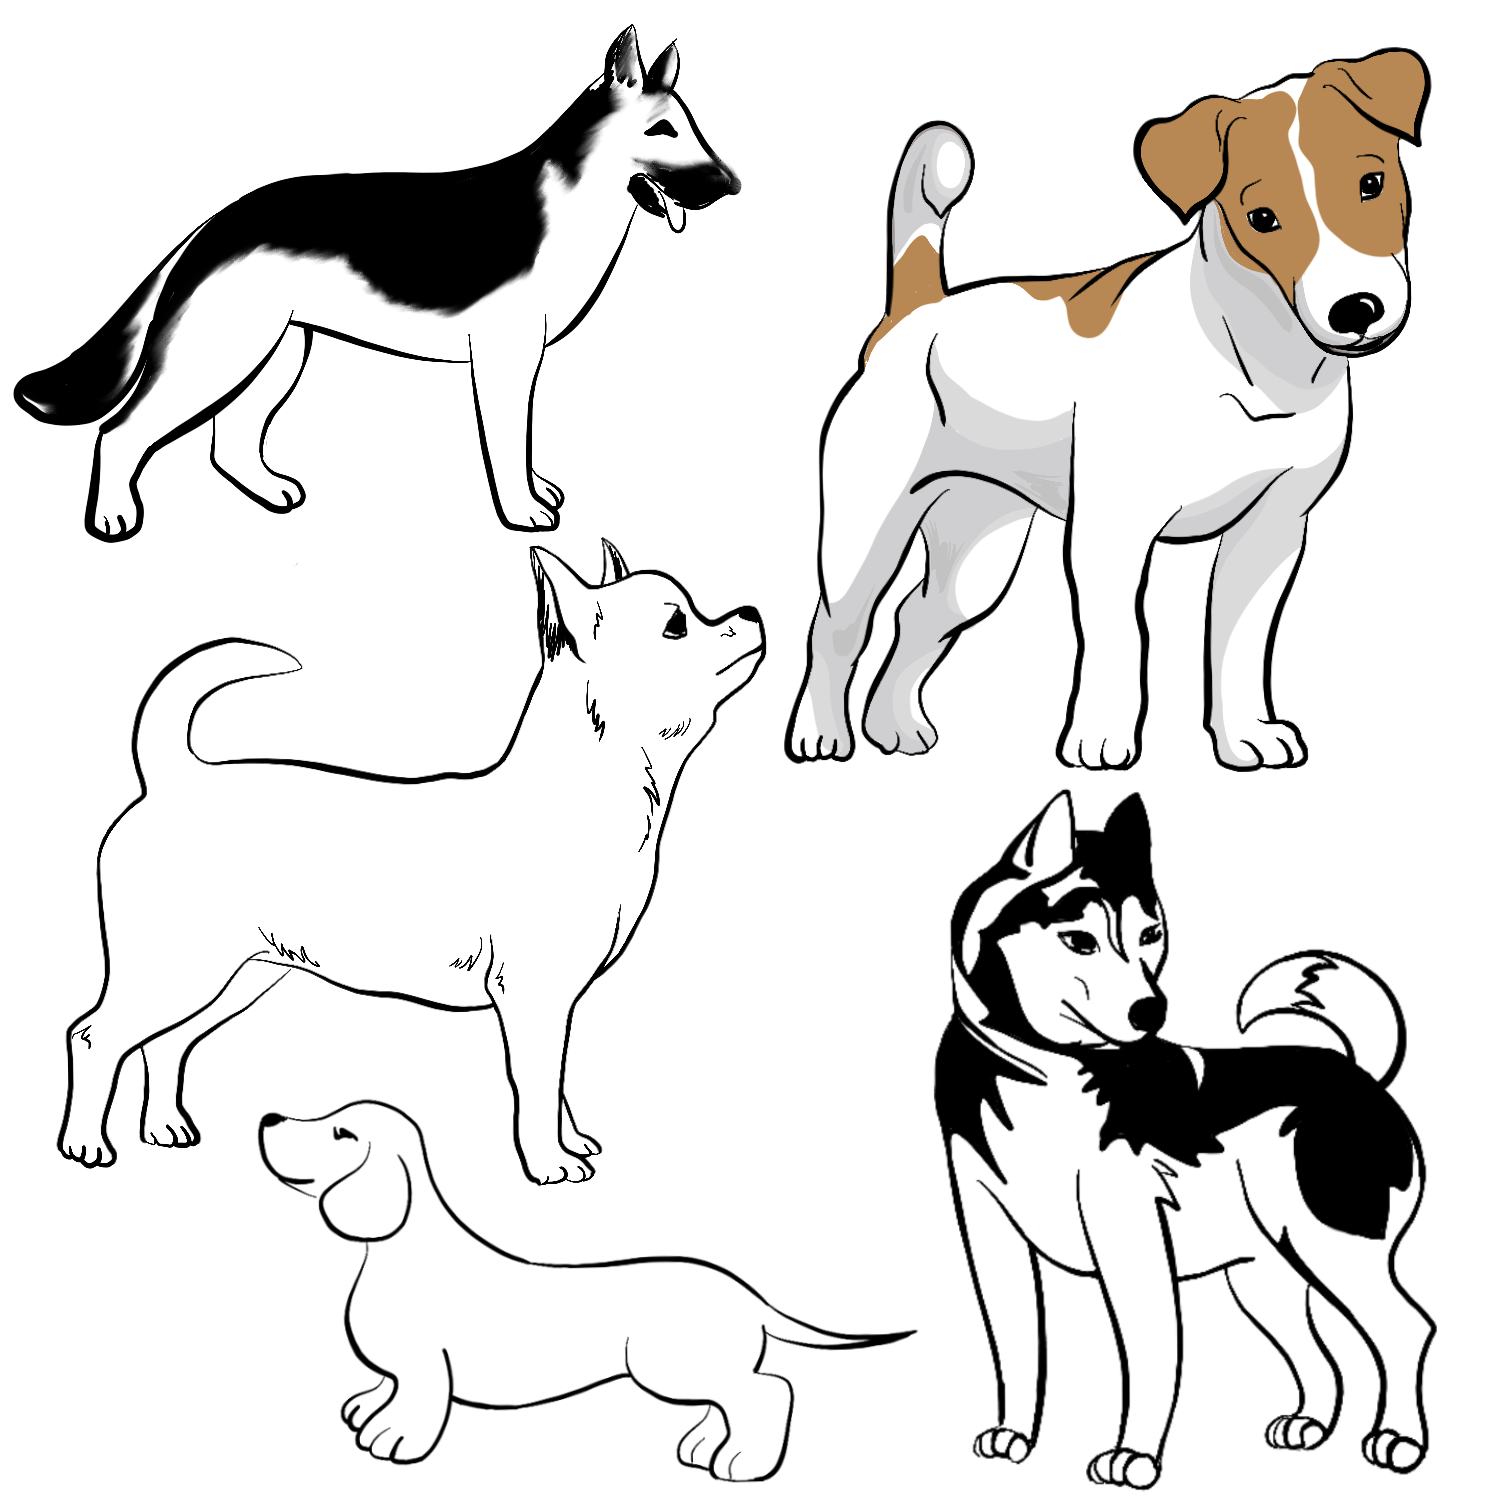 Догдей рисунок. Собака рисунок. Собака рисунок карандашом. Рисунок собаки для срисовки. Рисунок собаки карандашом для детей.